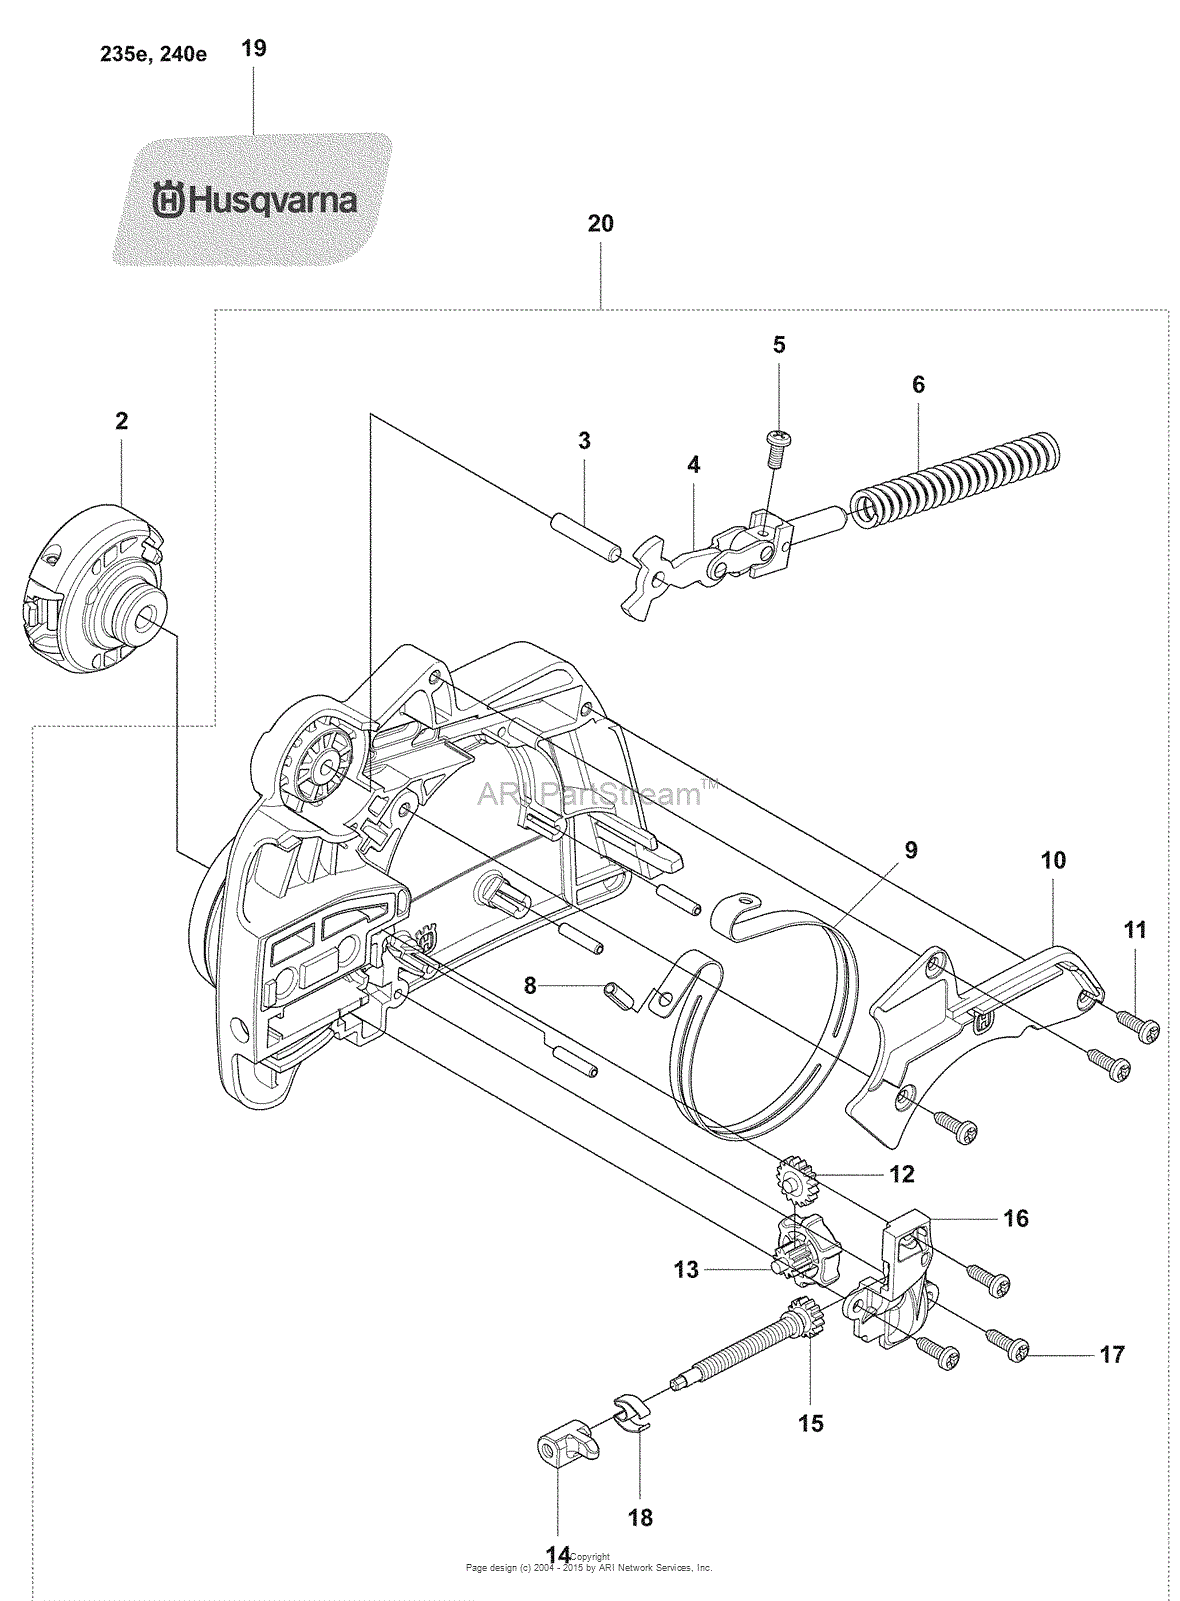 Husqvarna 240 e (2008-01) Parts Diagram for Chainbrake